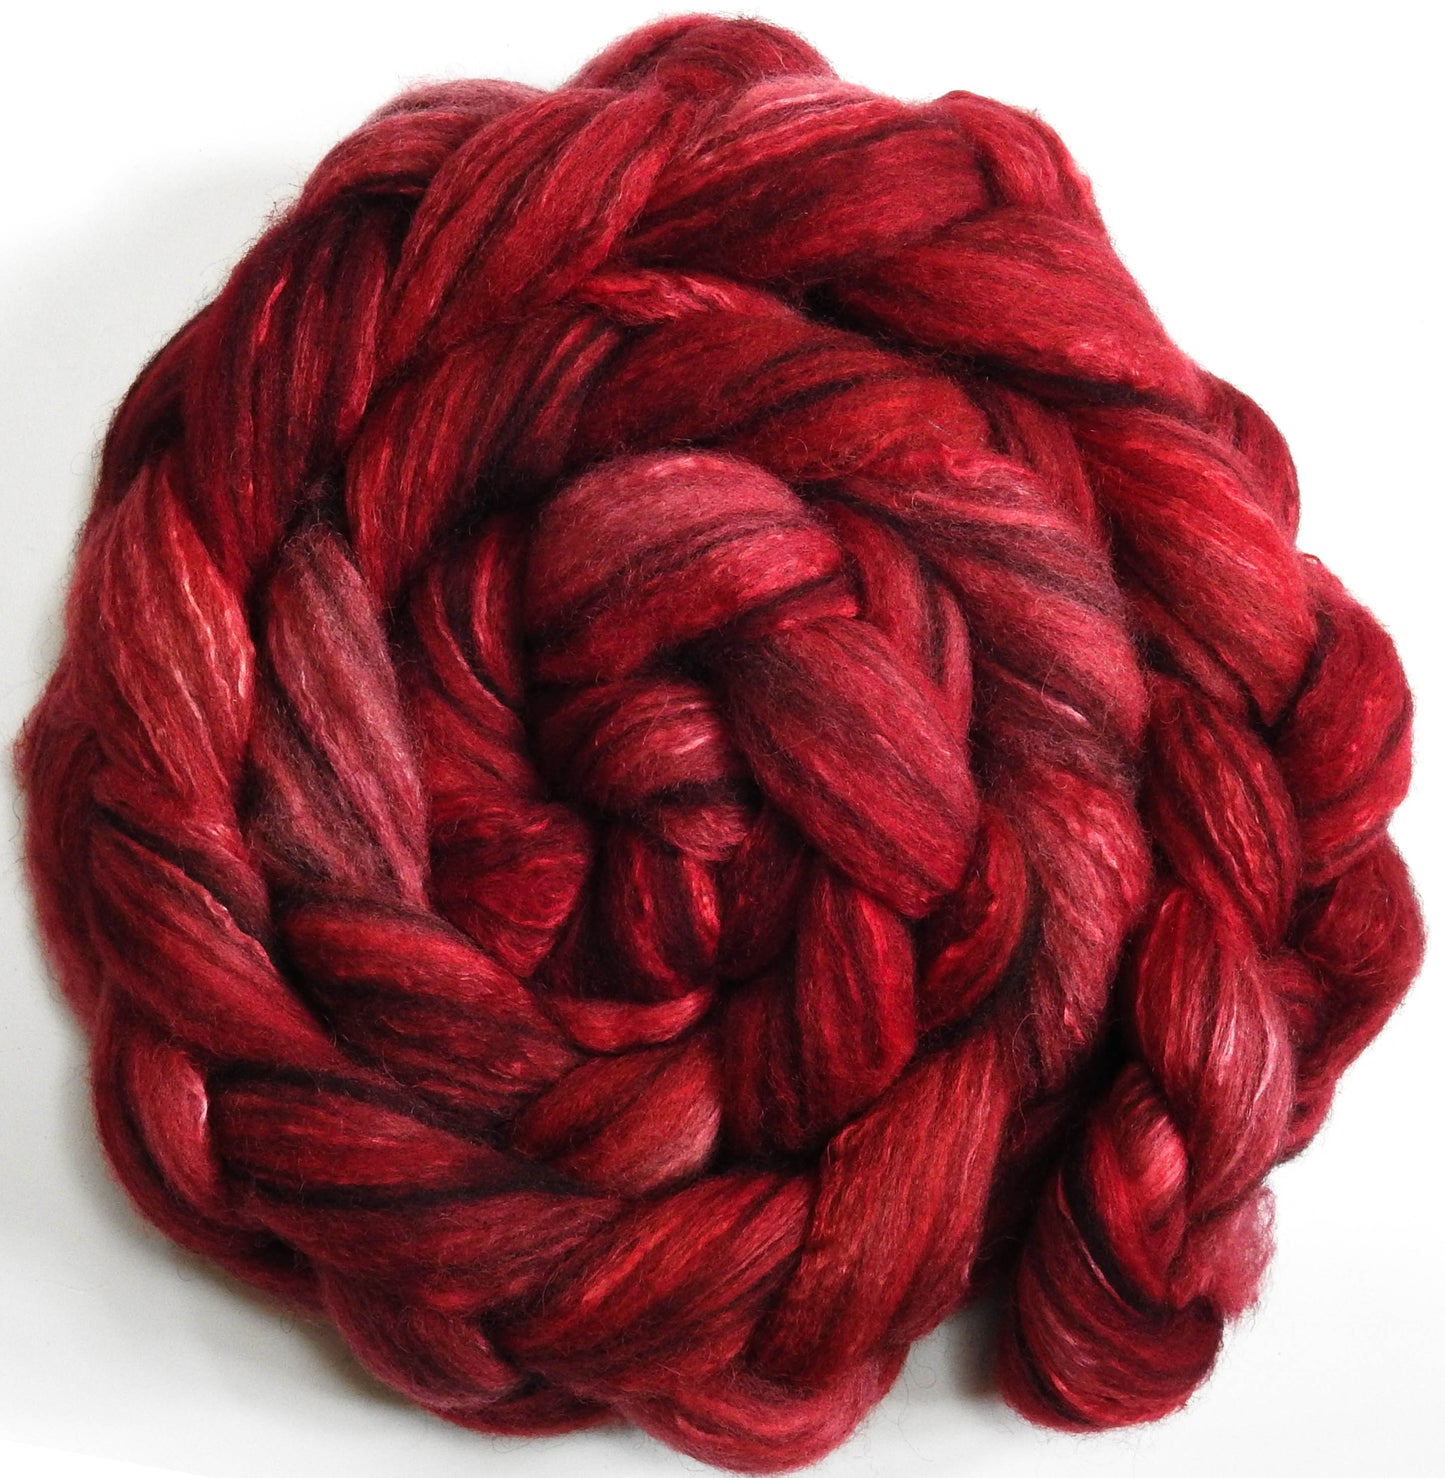 Poppy (5.8 oz) - Humbug Shetland/ Mulberry Silk (75/25)